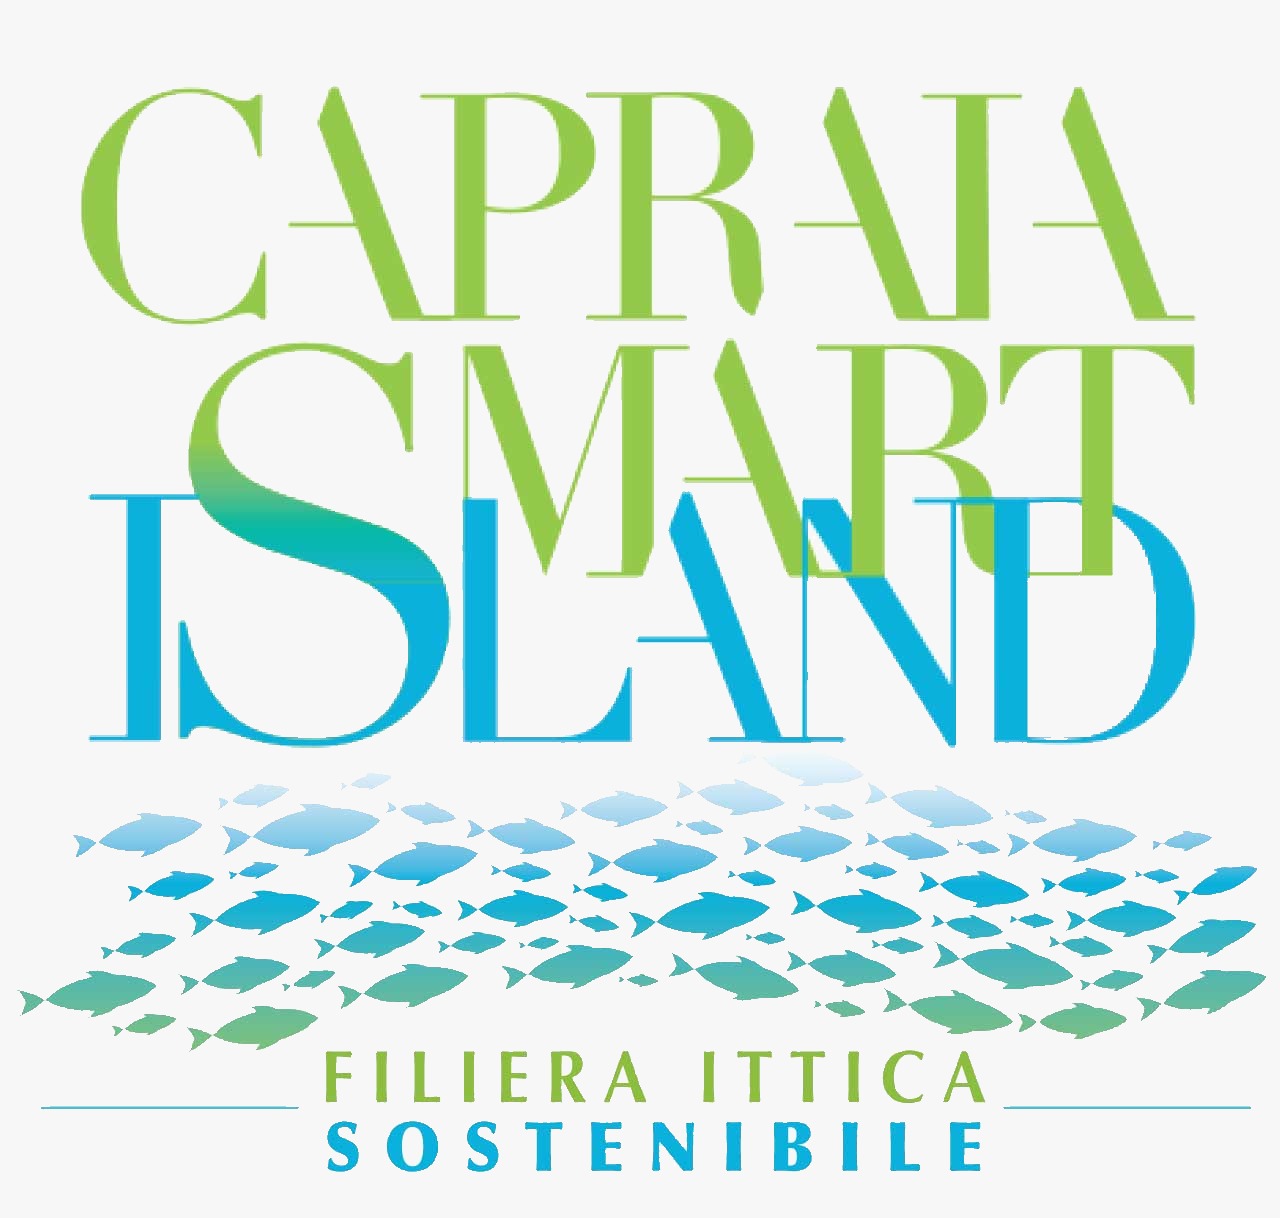 Sabato 25 settembre giornata conclusiva di "Capraia Smart Island - Filiera Ittica Sostenibile" l